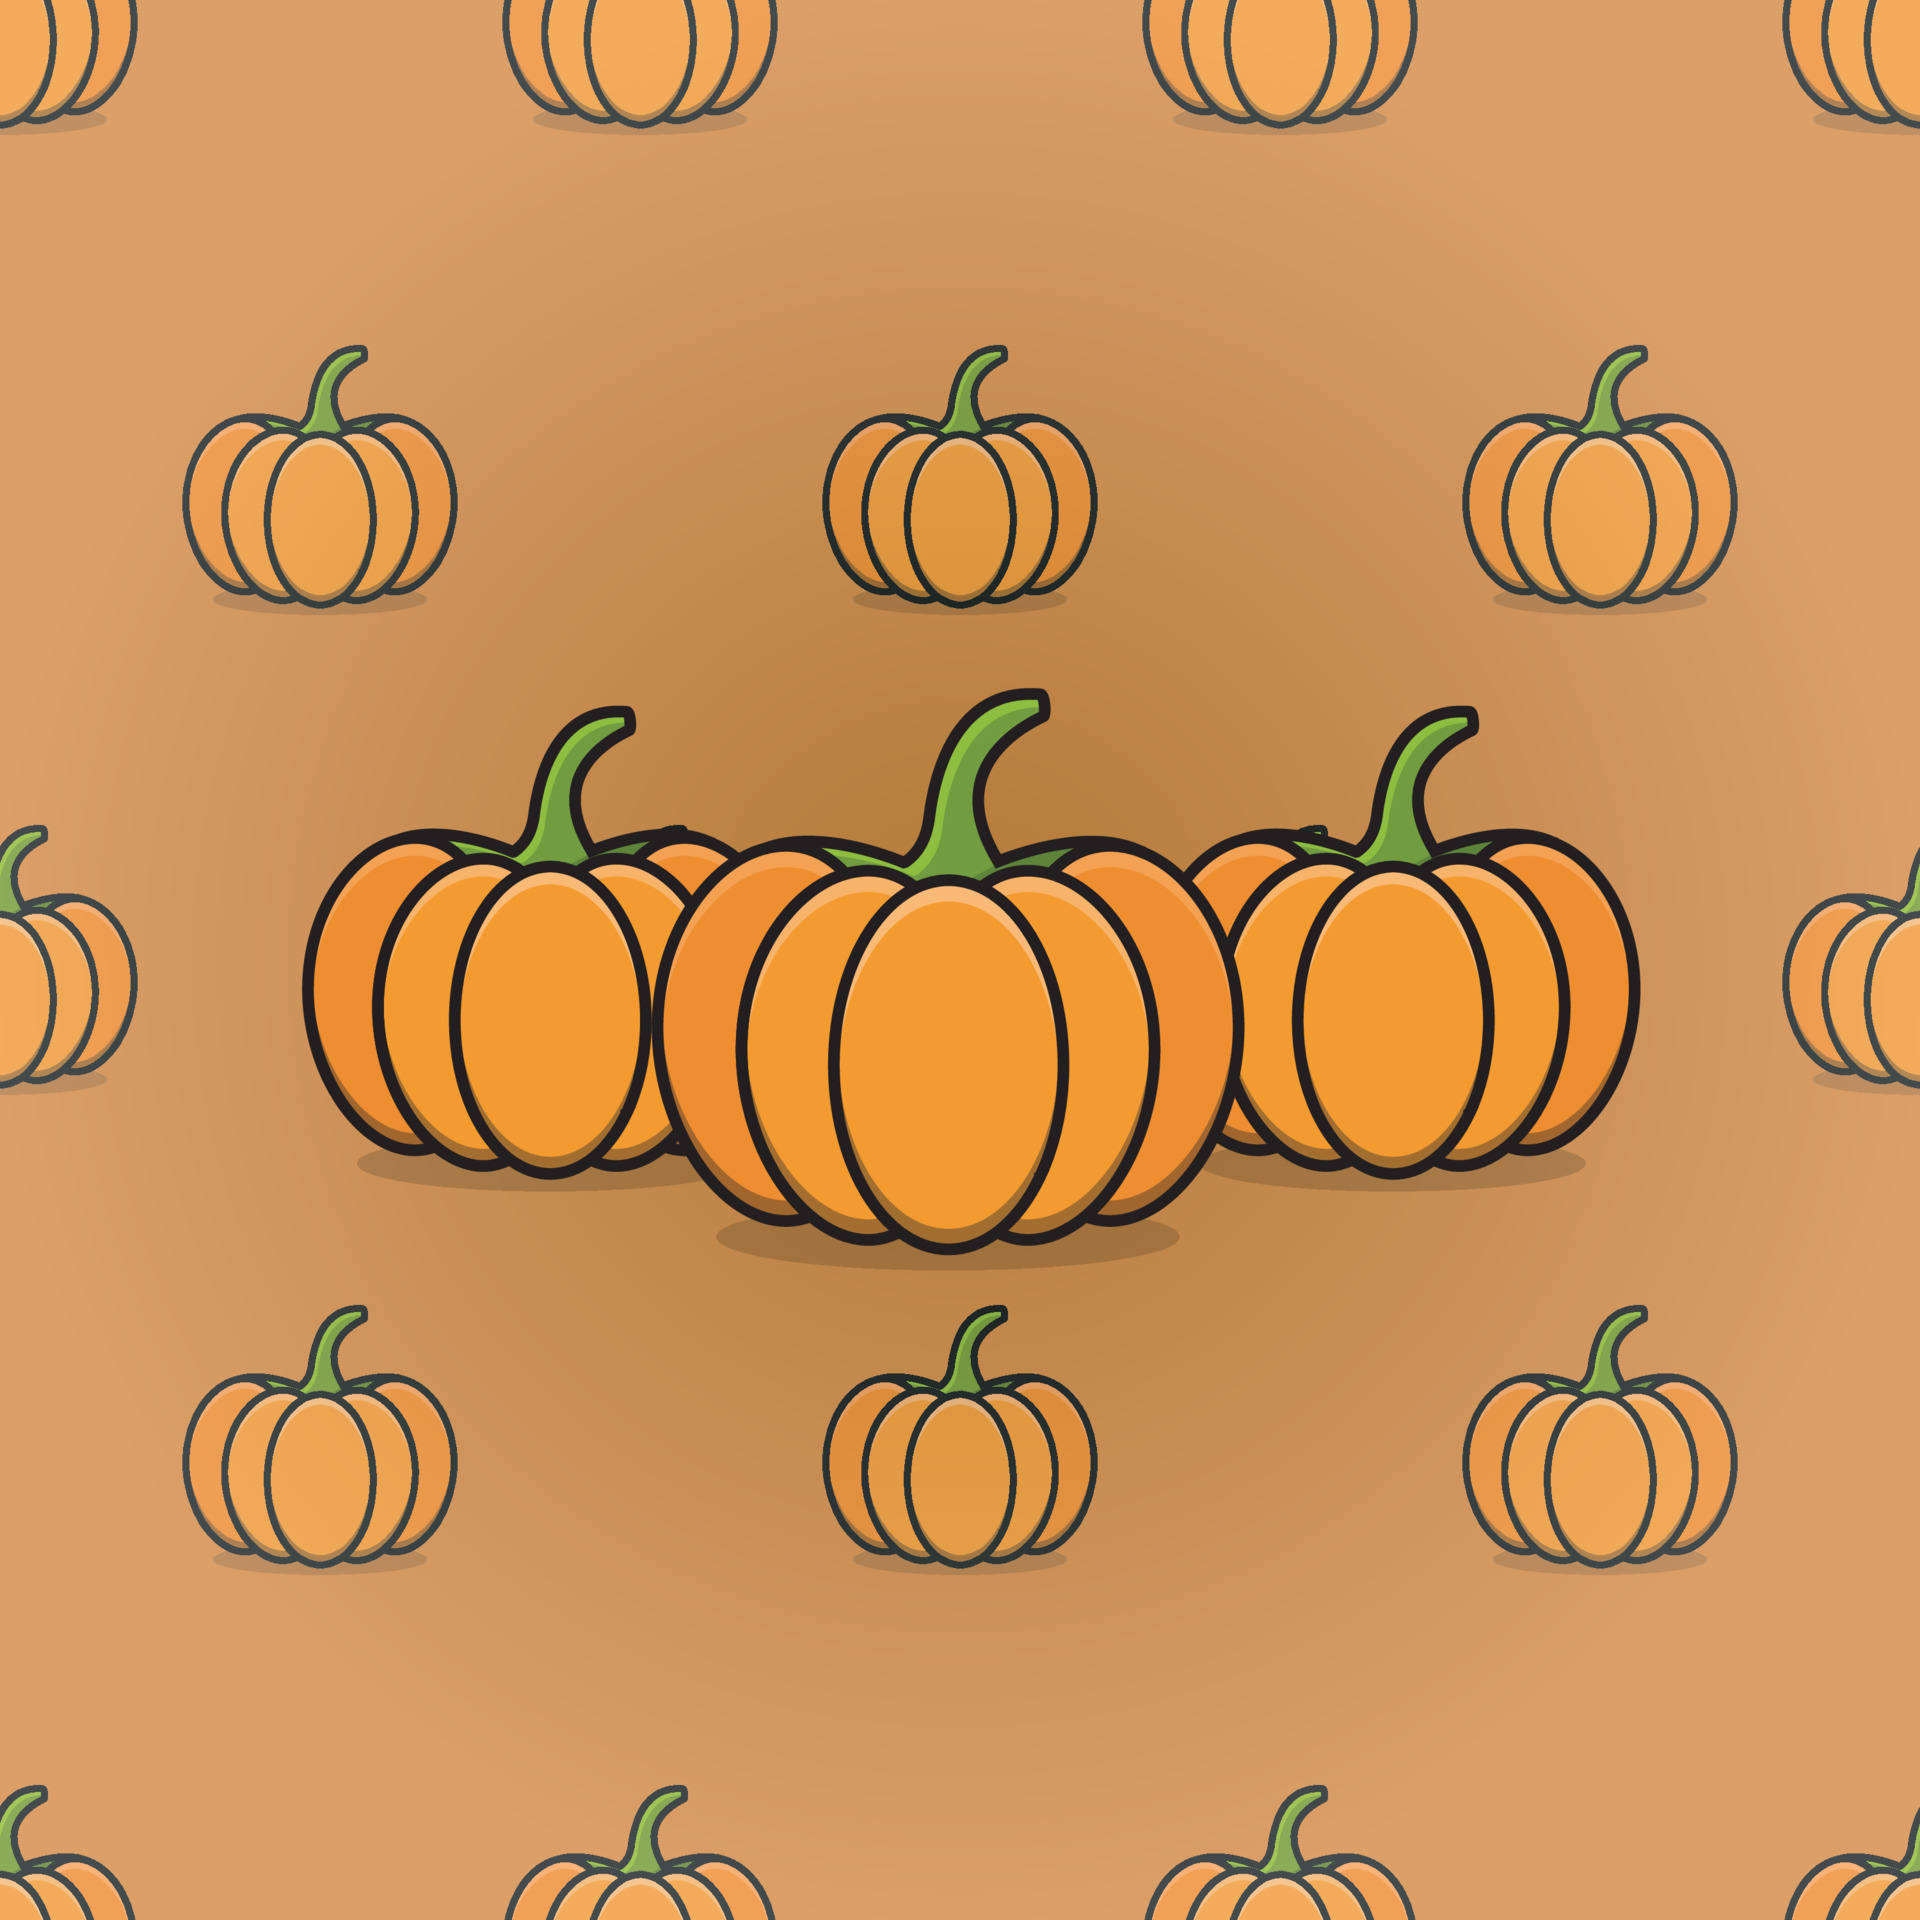 Pumpkin Wallpaper